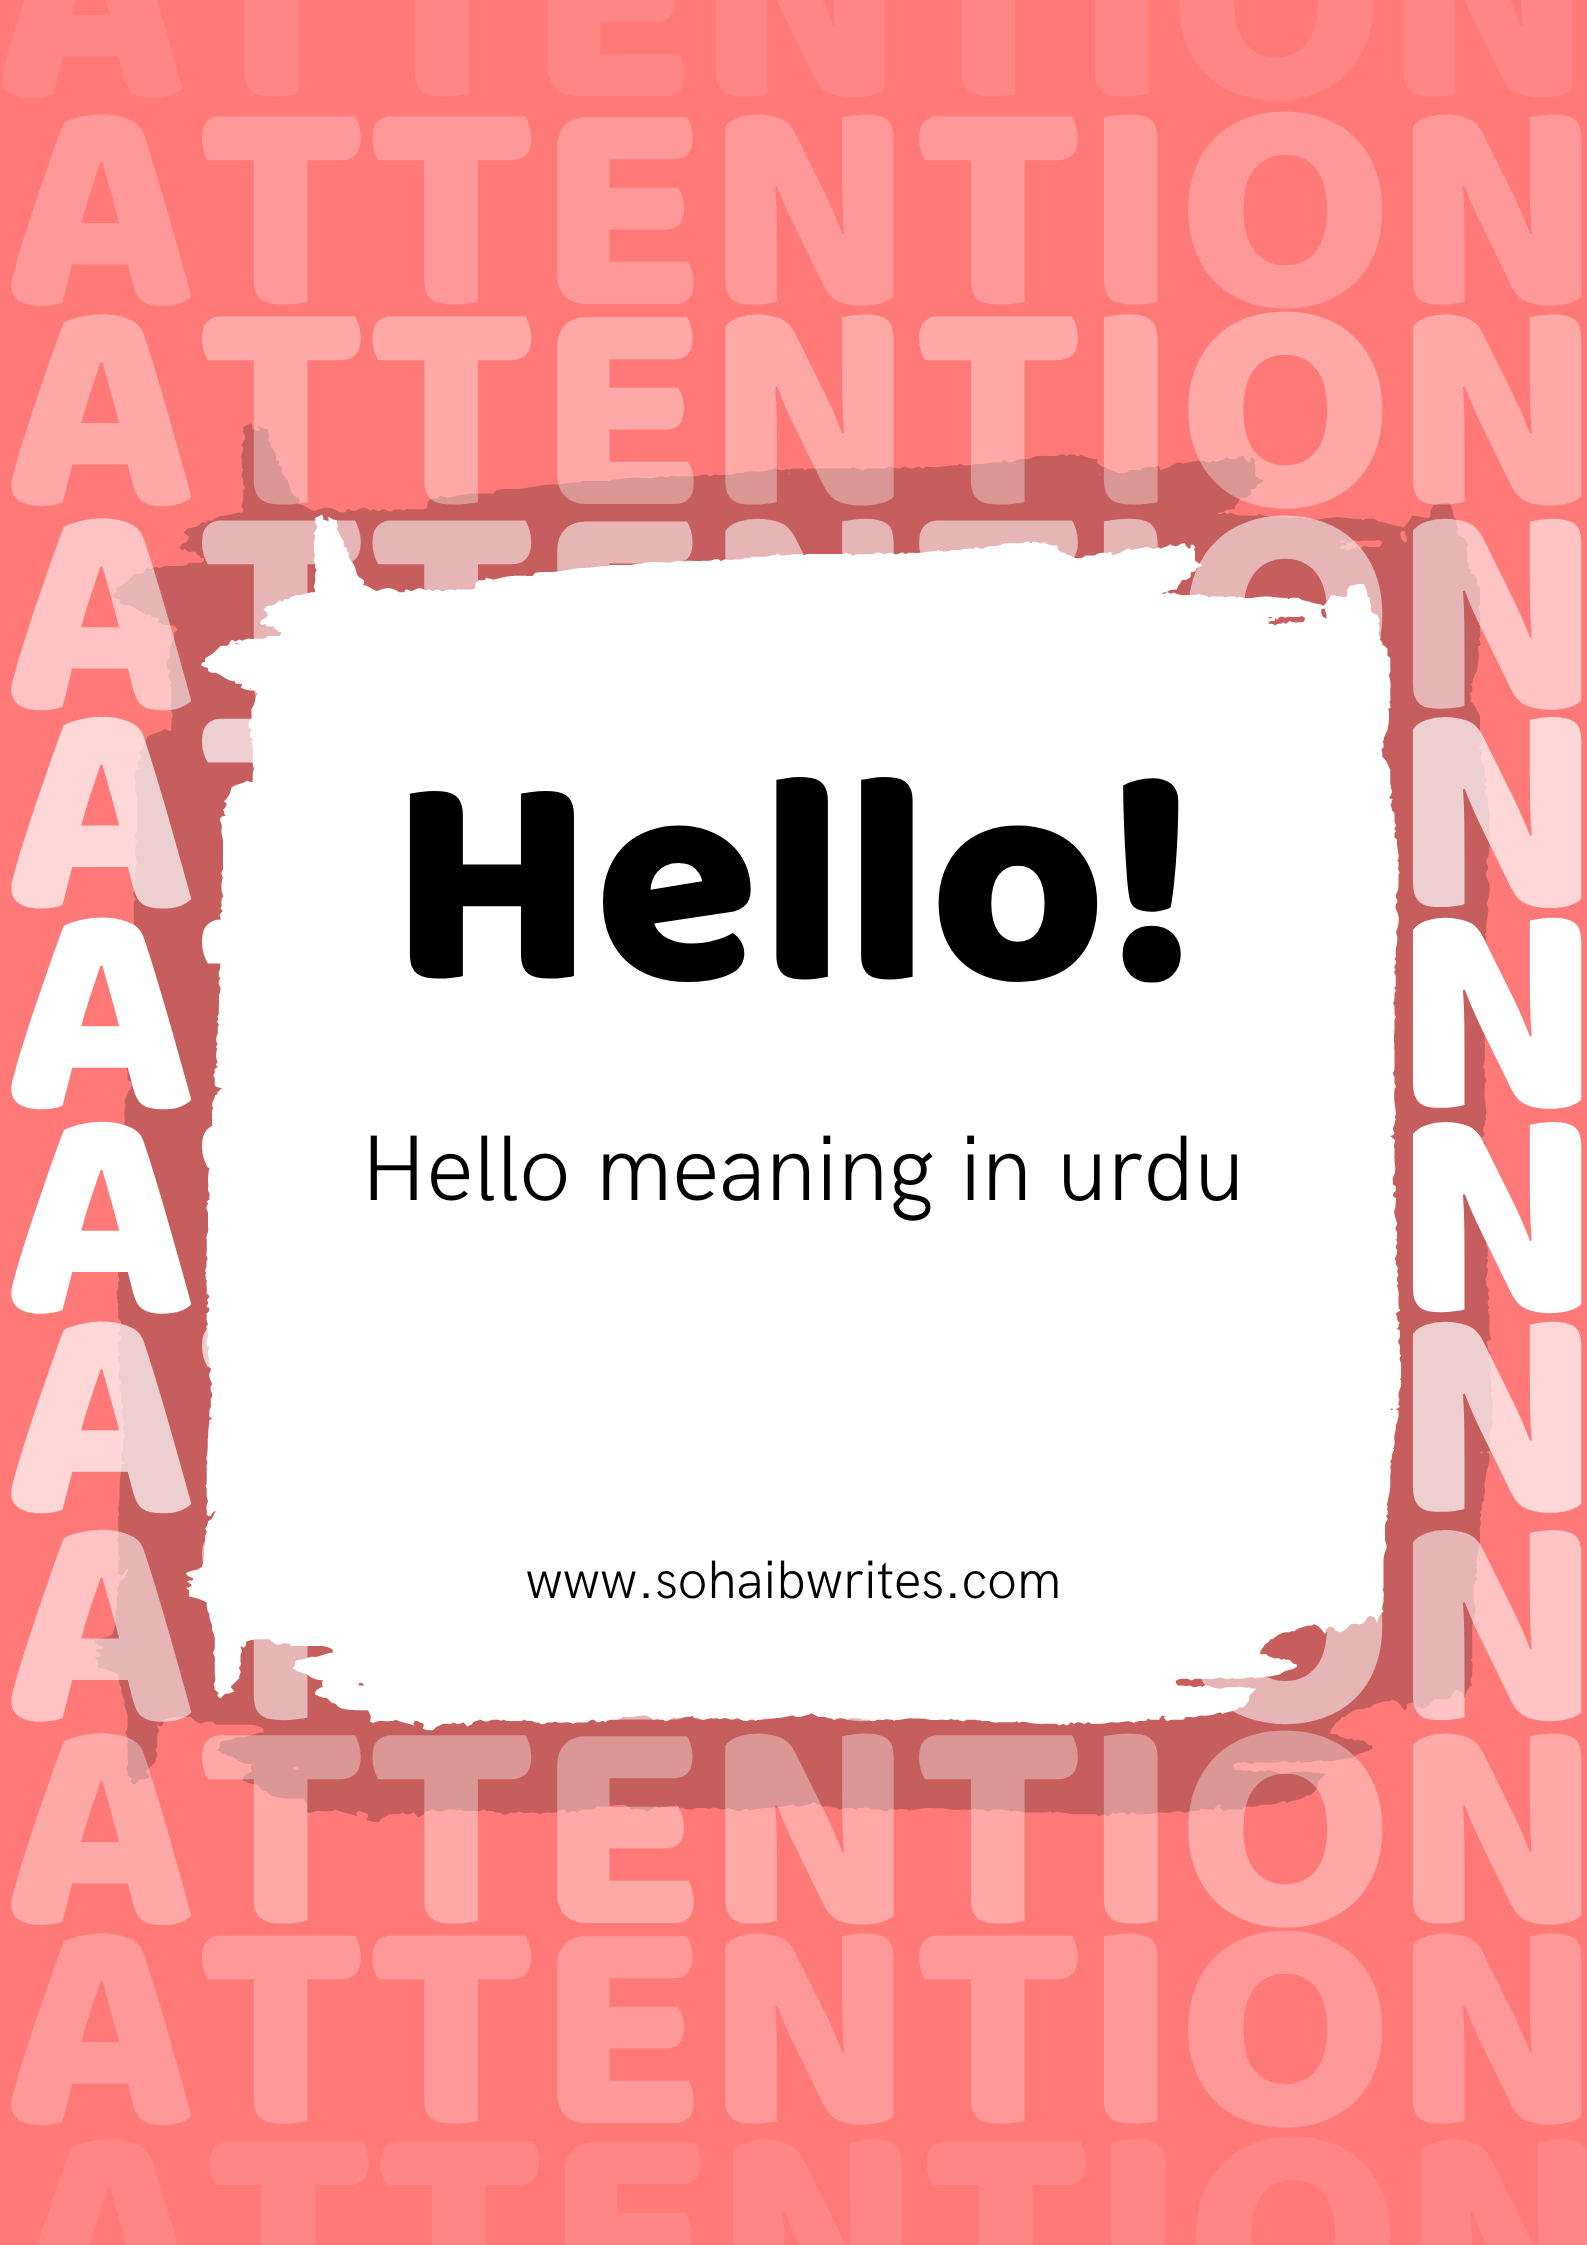 Hello meaning in urdu